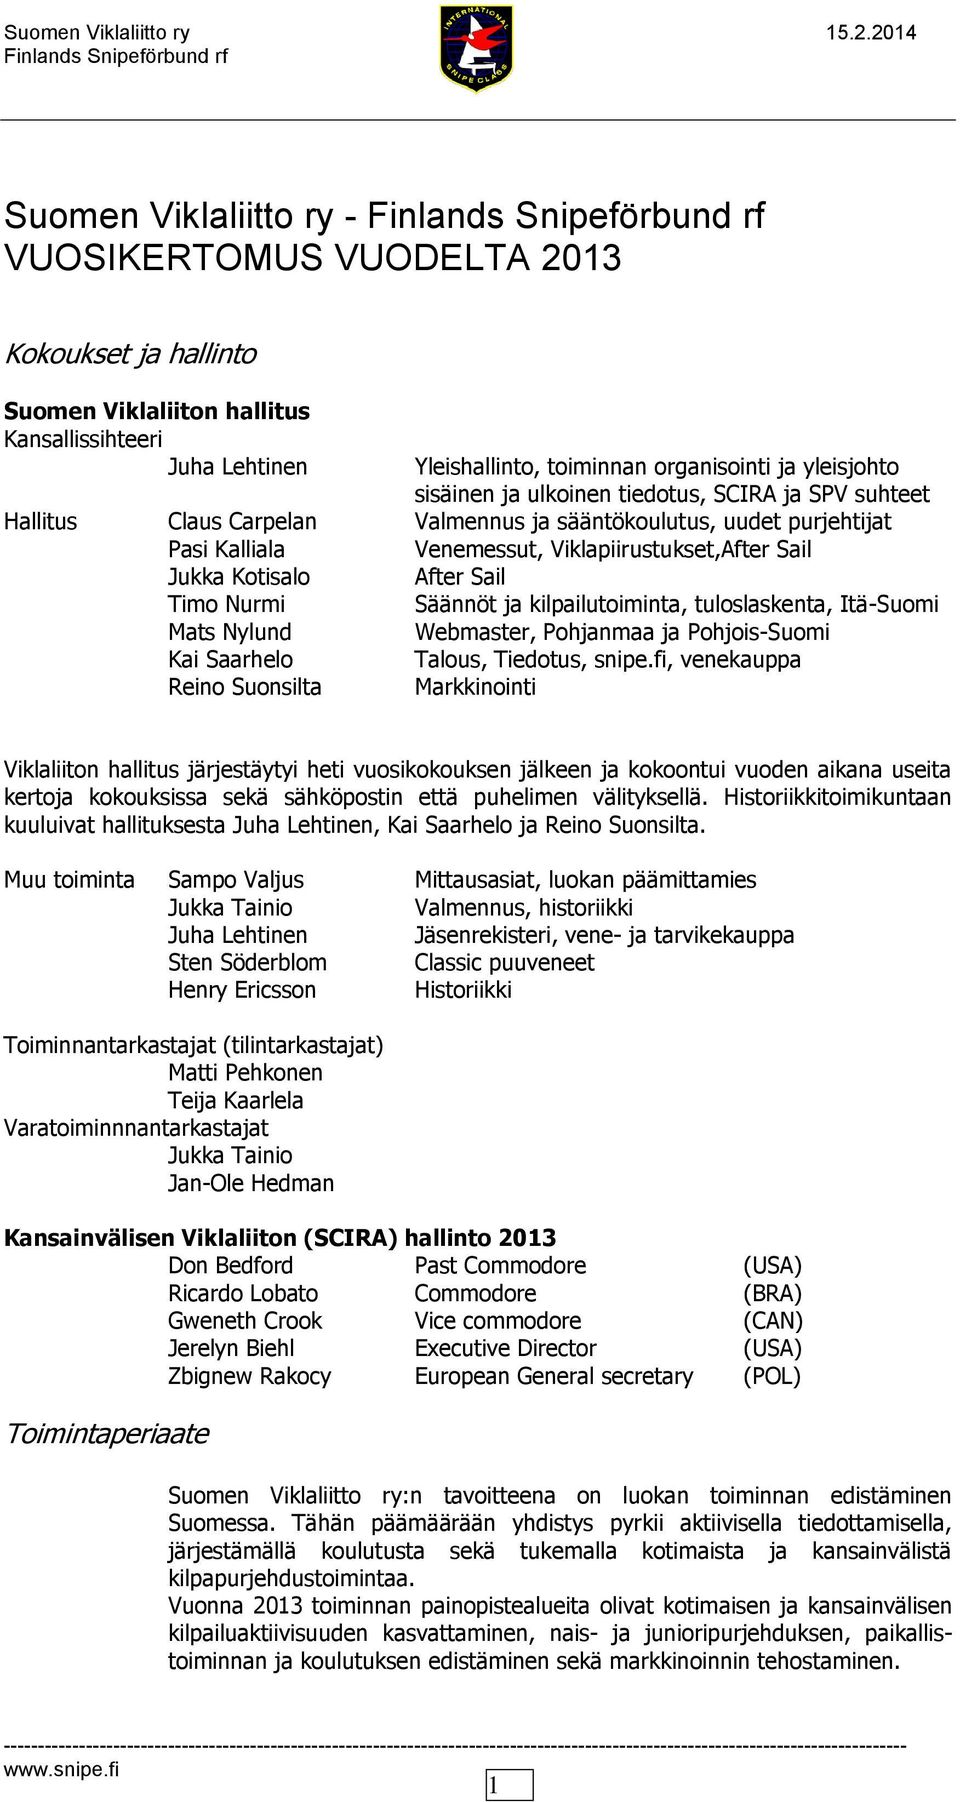 Nurmi Säännöt ja kilpailutoiminta, tuloslaskenta, Itä-Suomi Mats Nylund Webmaster, Pohjanmaa ja Pohjois-Suomi Kai Saarhelo Talous, Tiedotus, snipe.